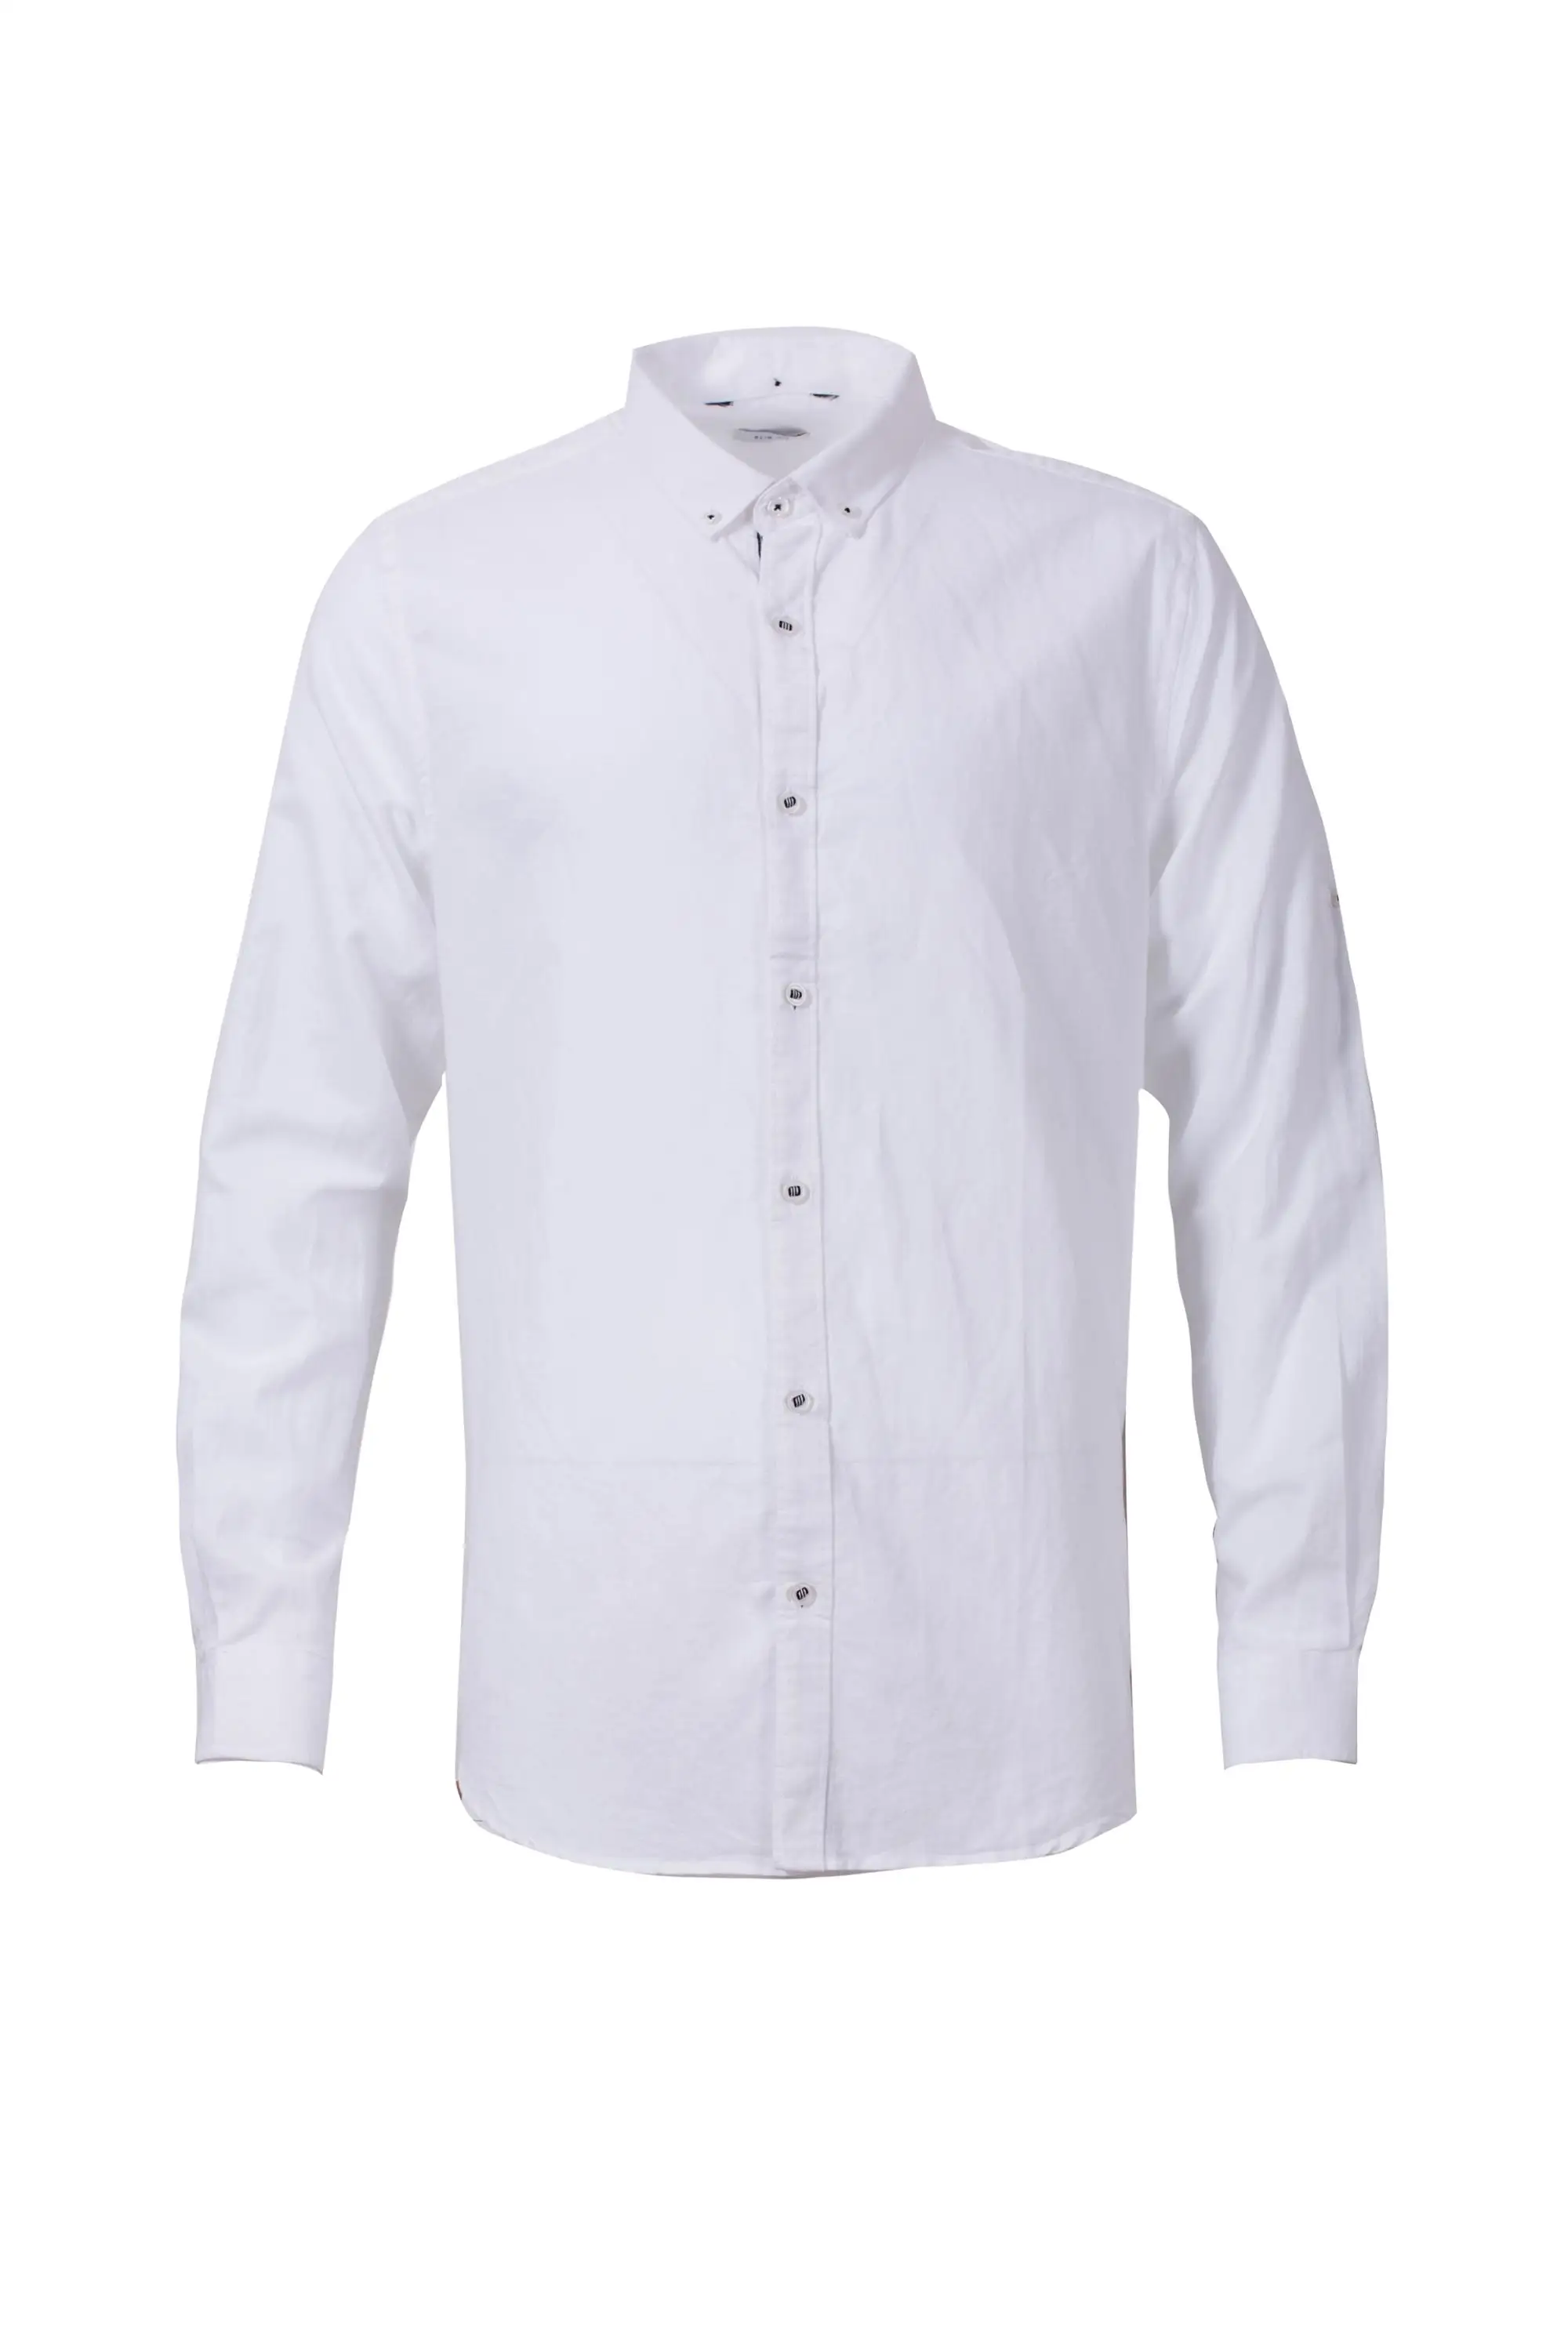 Pria Kemeja Desain Lengan Panjang Putih T Shirt Pembuatan Kapas Polo